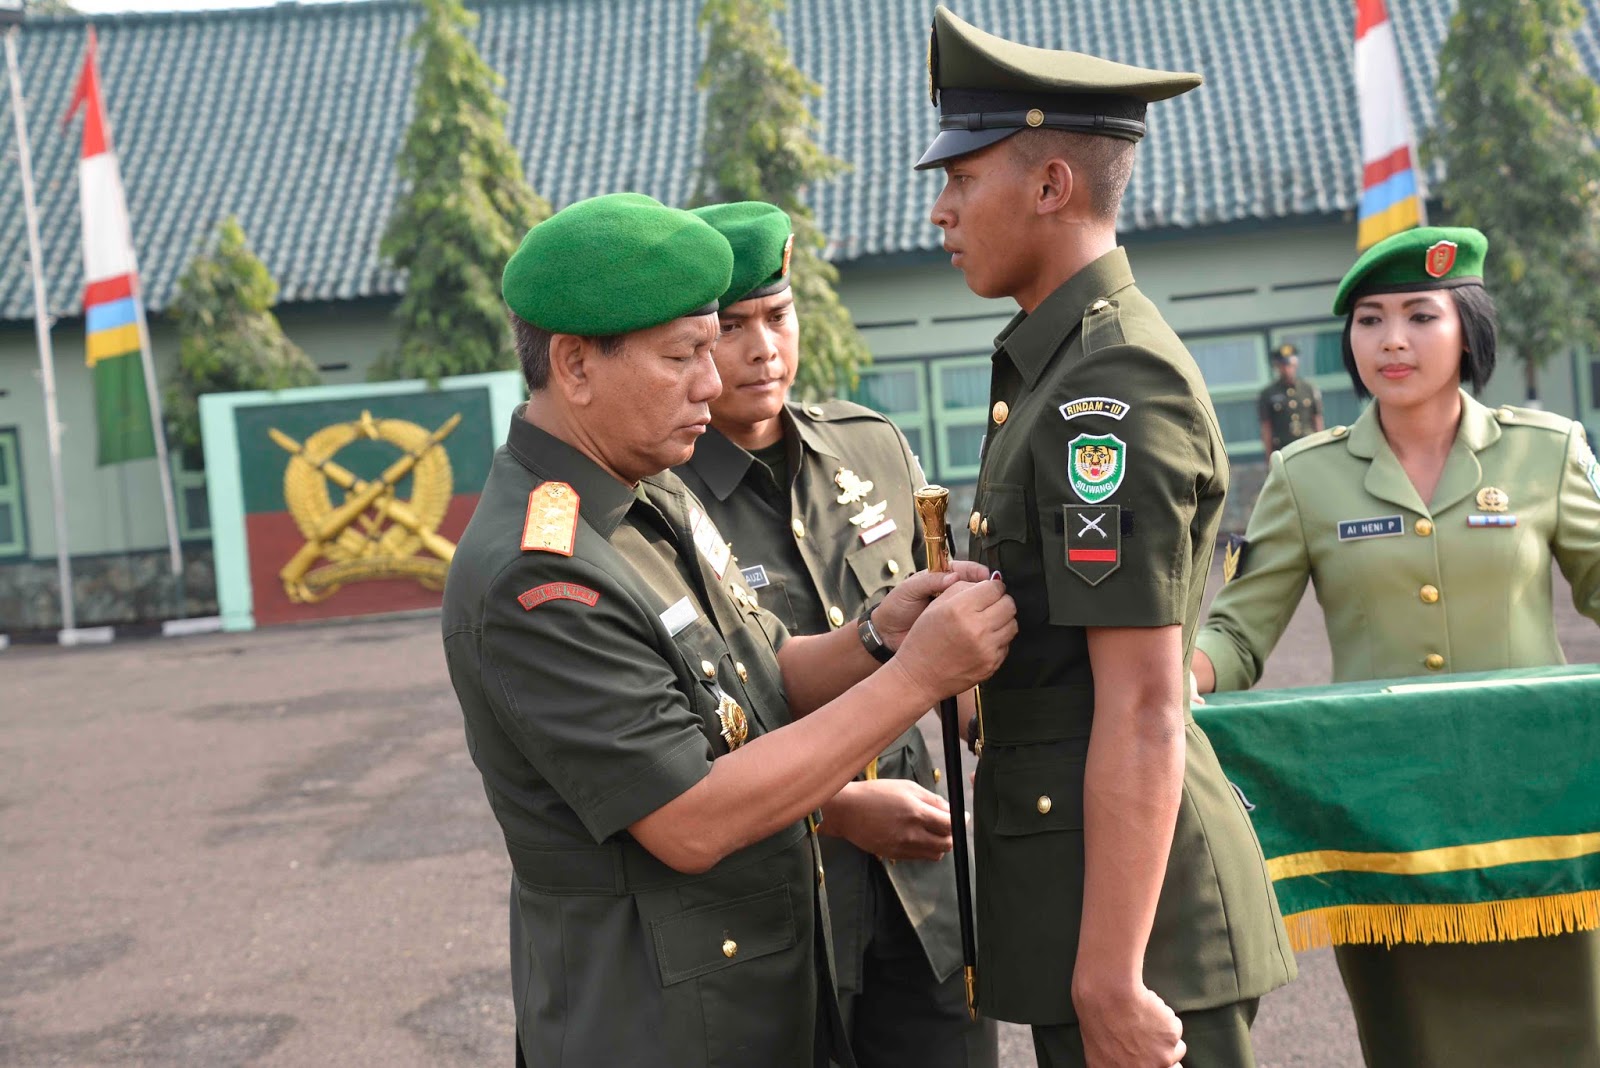 Kenali Tentara Nasional Indonesia dengan Membedakan Warna 